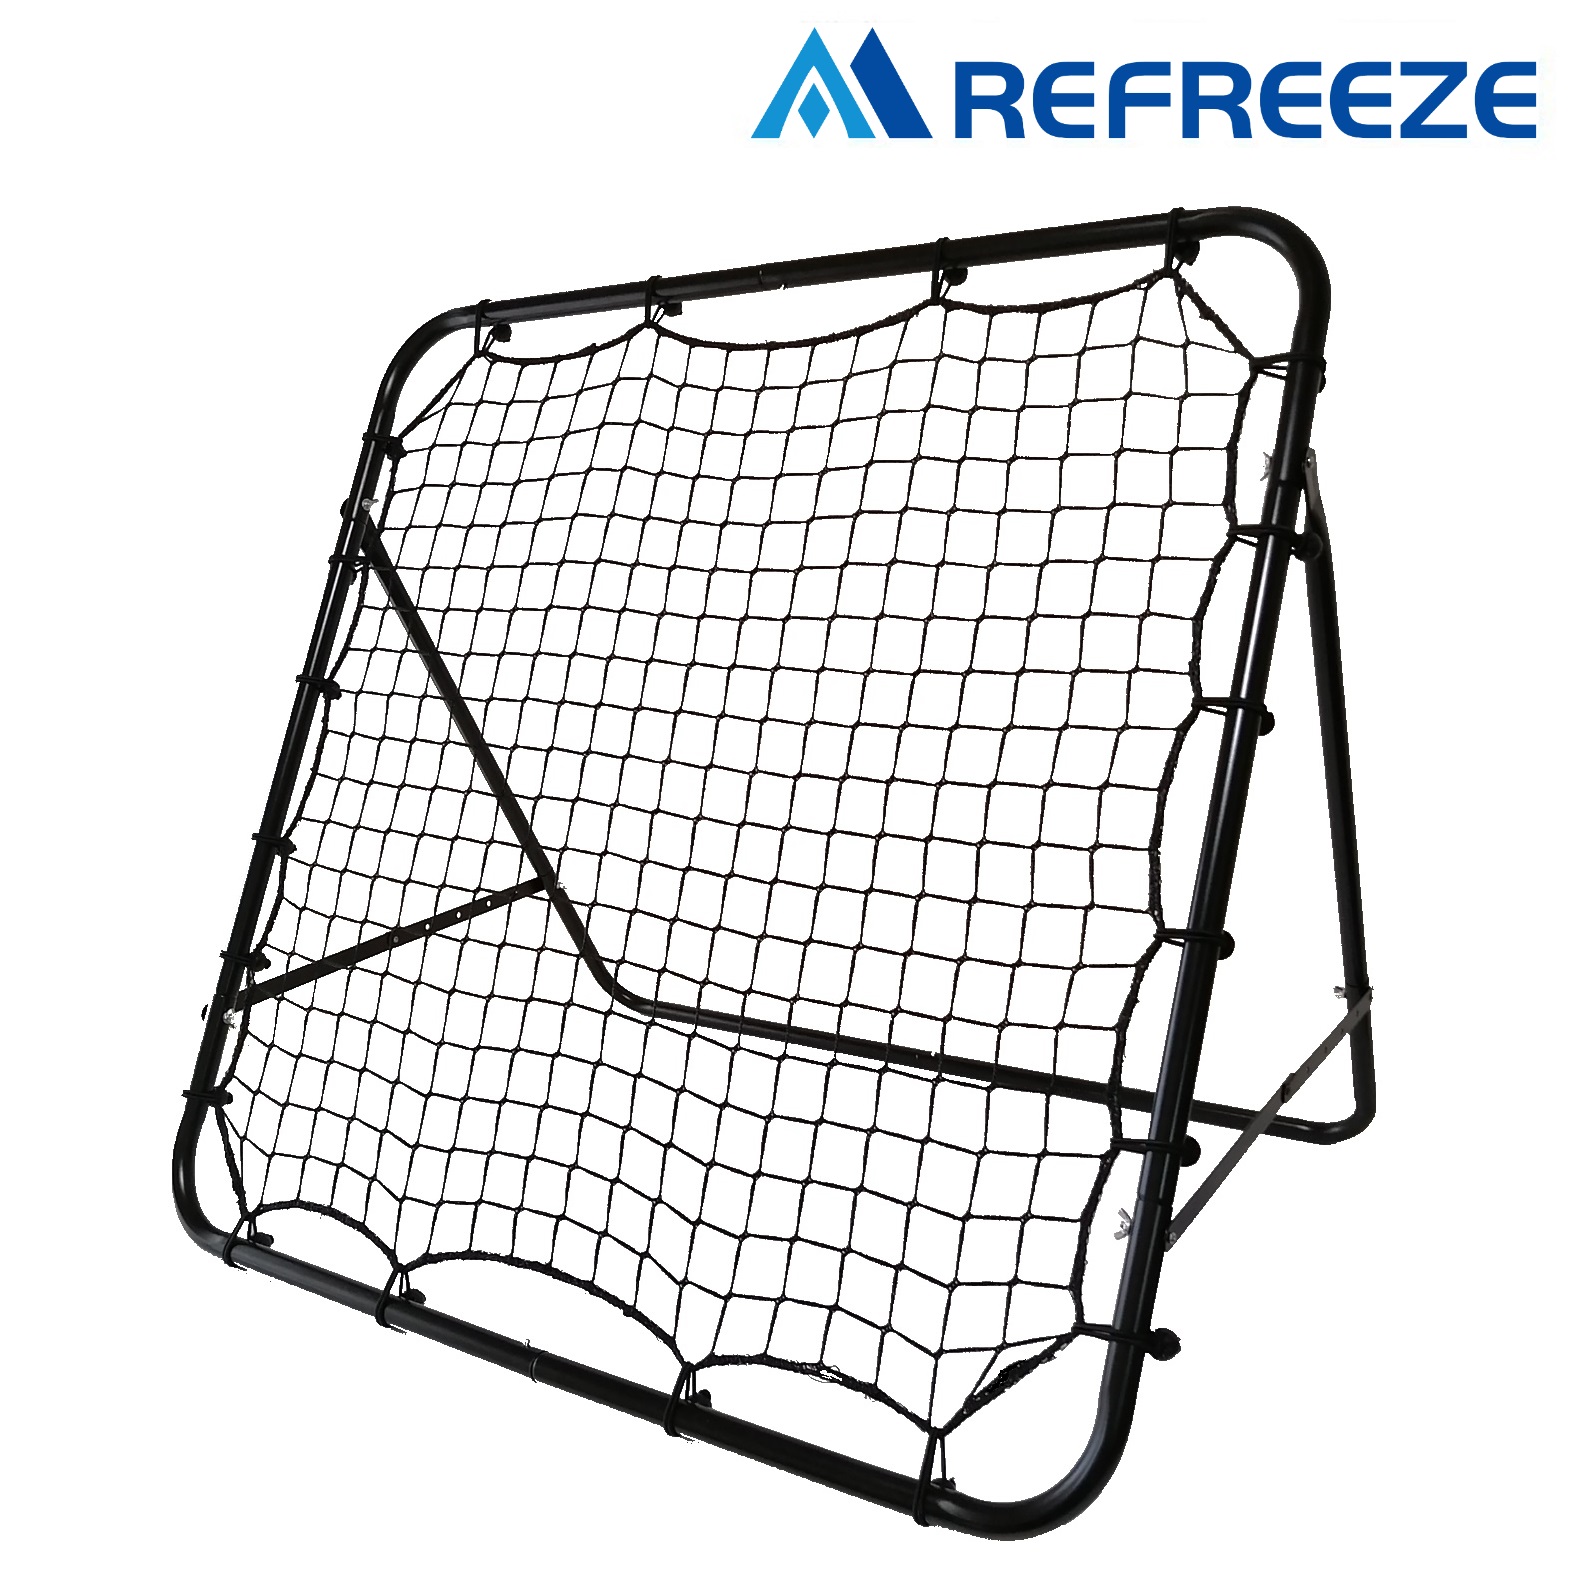 REFREEZE(リフリーズ) リバウンドネット ブラック 室内 屋外兼用 リバウンダー サッカー フットサル 野球 練習 トレーニング